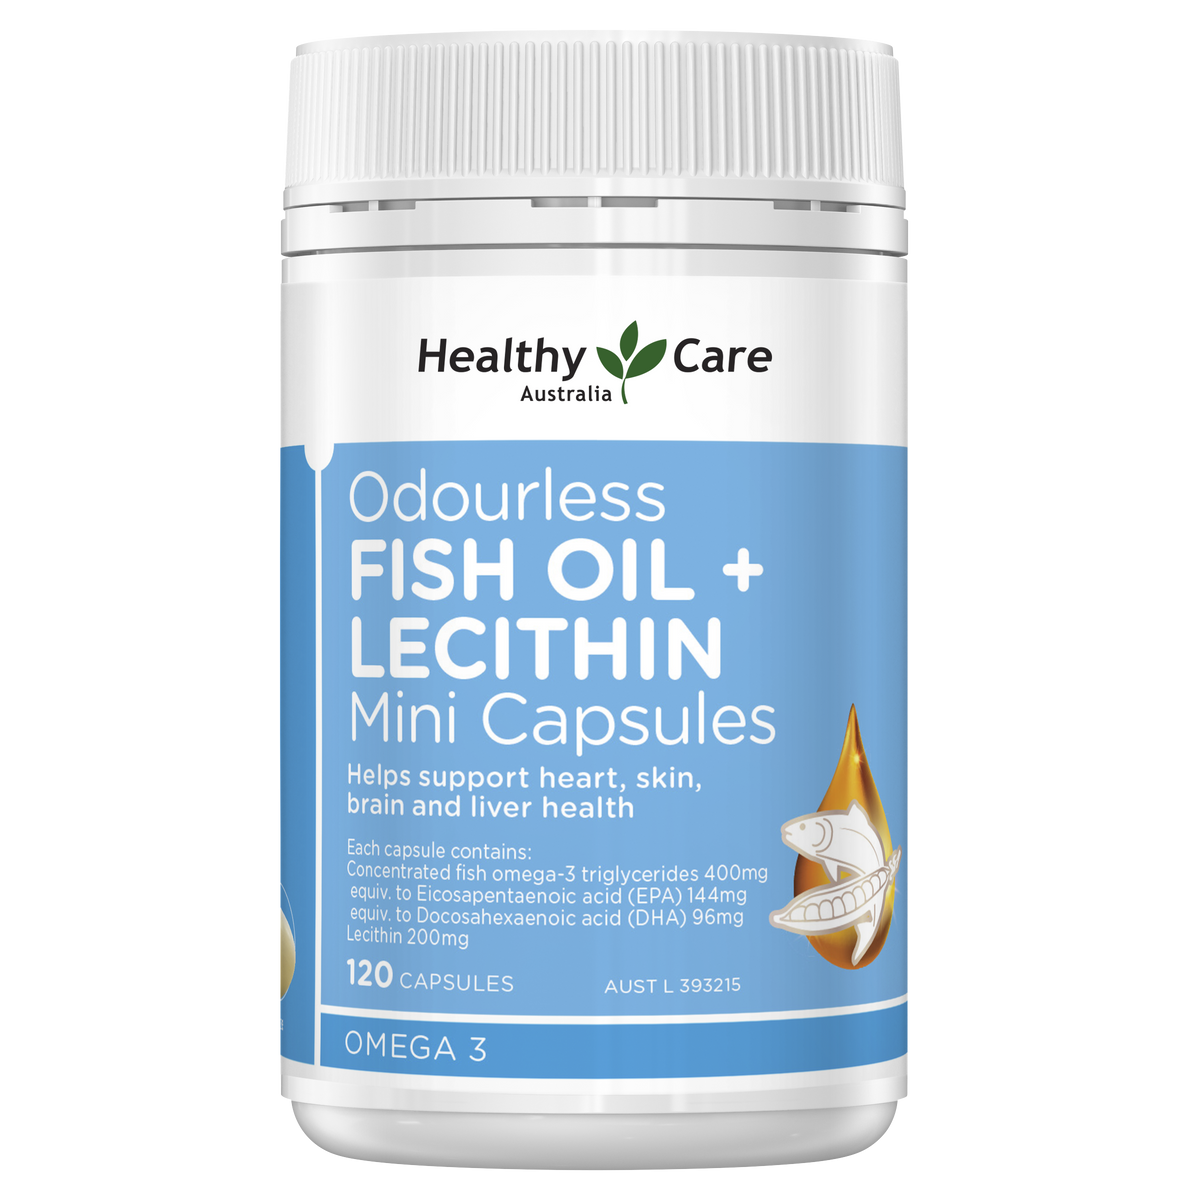 Healthy Care Fish Oil Lecithin Mini Capsules 120 capsules